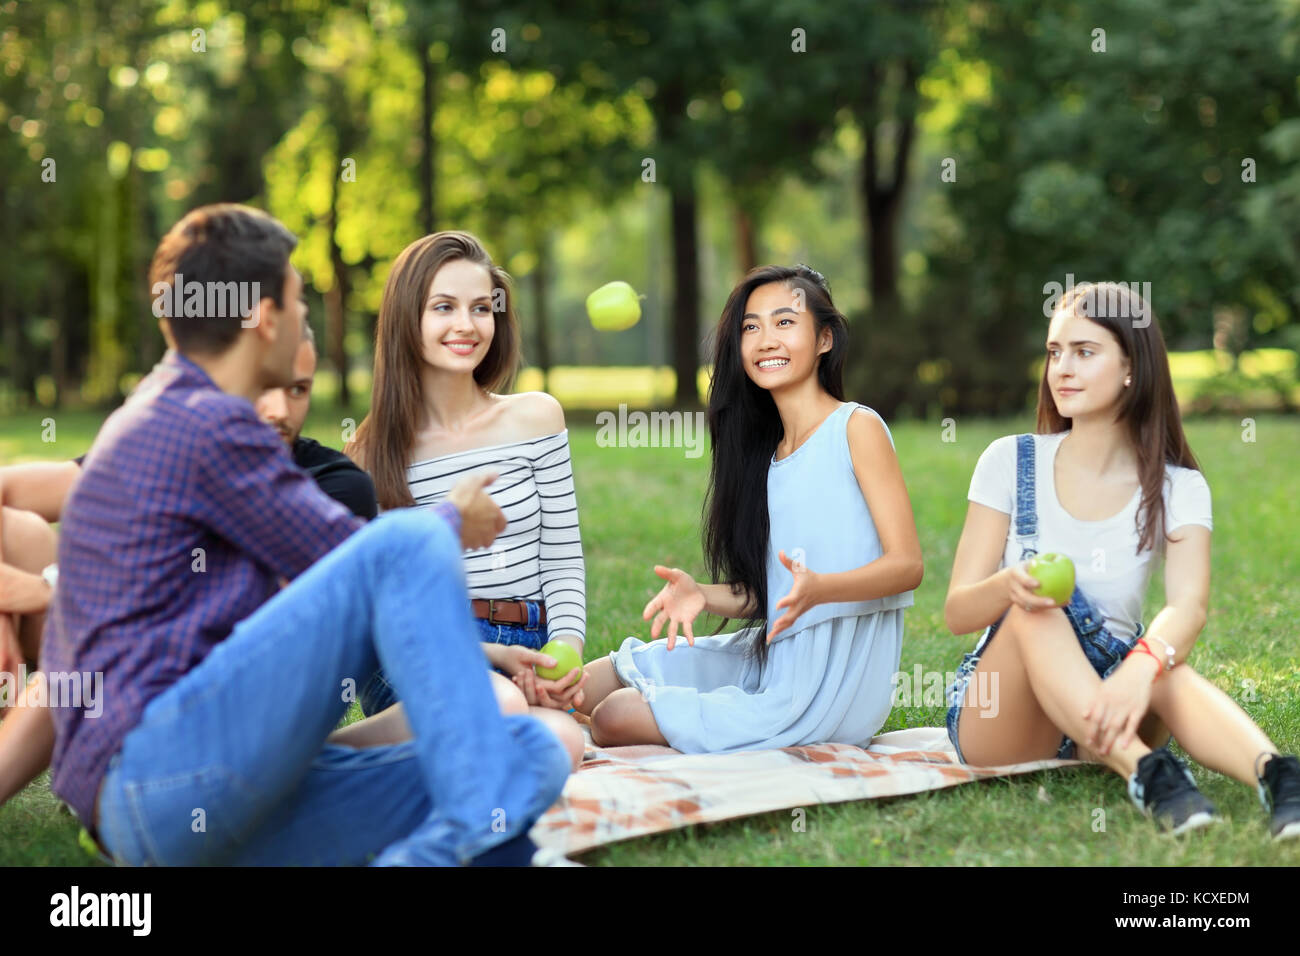 Freunde auf Picknick, junge Mann wirft einen Apfel zu Frau. Studenten Spaß am Mittagessen im sonnigen Park. Menschen unterschiedlicher Nationalitäten verbringen Ihre fr Stockfoto